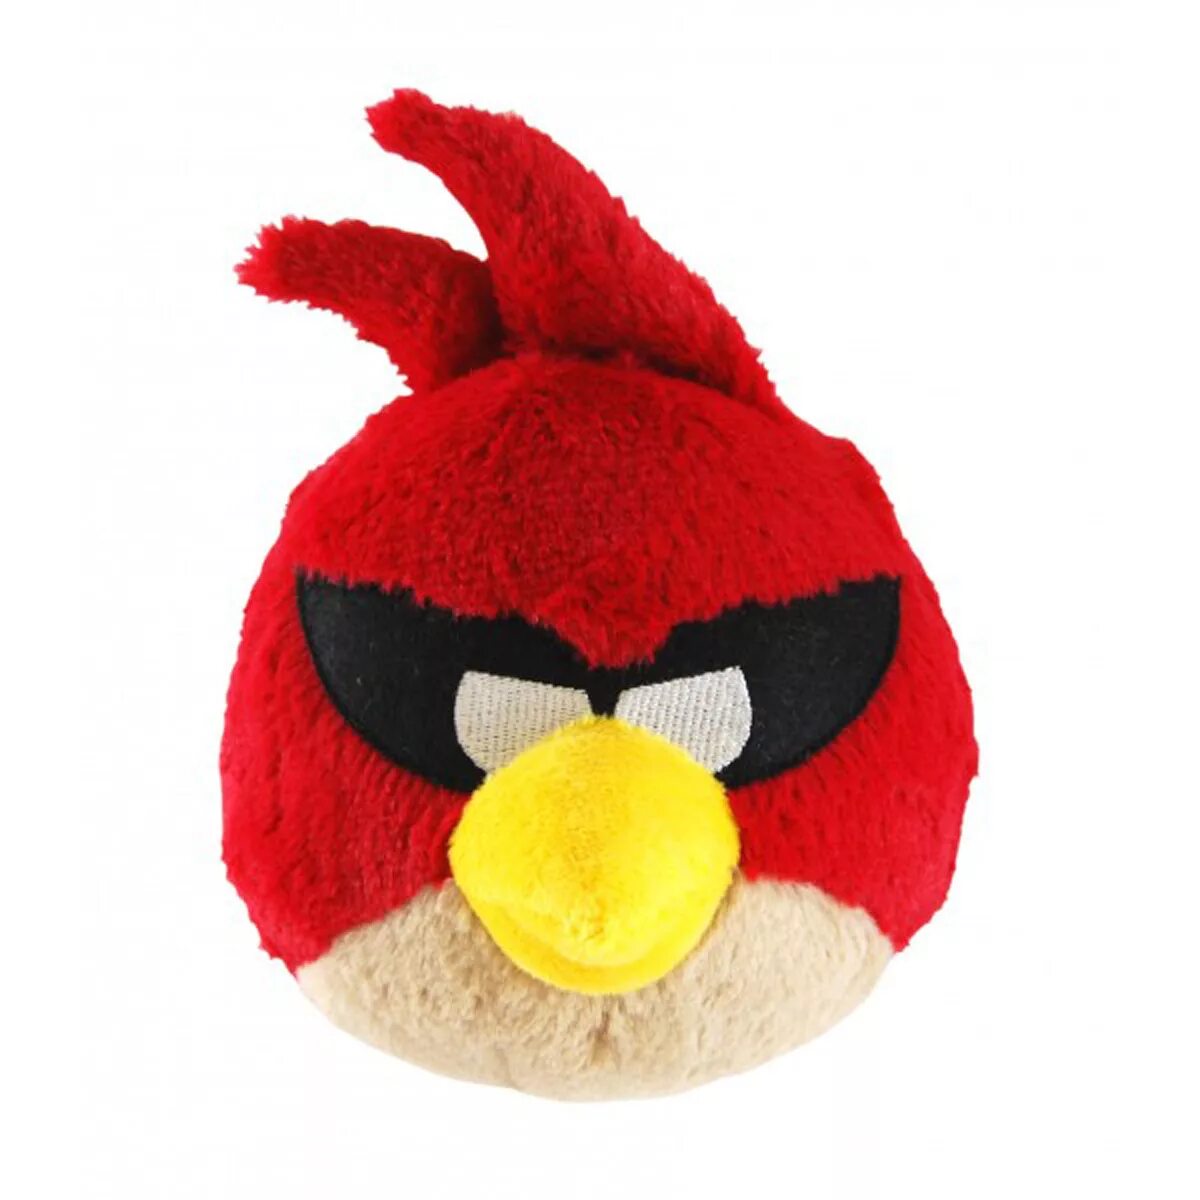 Angry Birds Space Plush Toys. Игрушка Энгри бердз мягкая красная. Angry Birds Space игрушки мягкие. Мягкая игрушка Angry Birds Space - красная птица (звук), 40 см. Мягкие игрушки энгри бердз